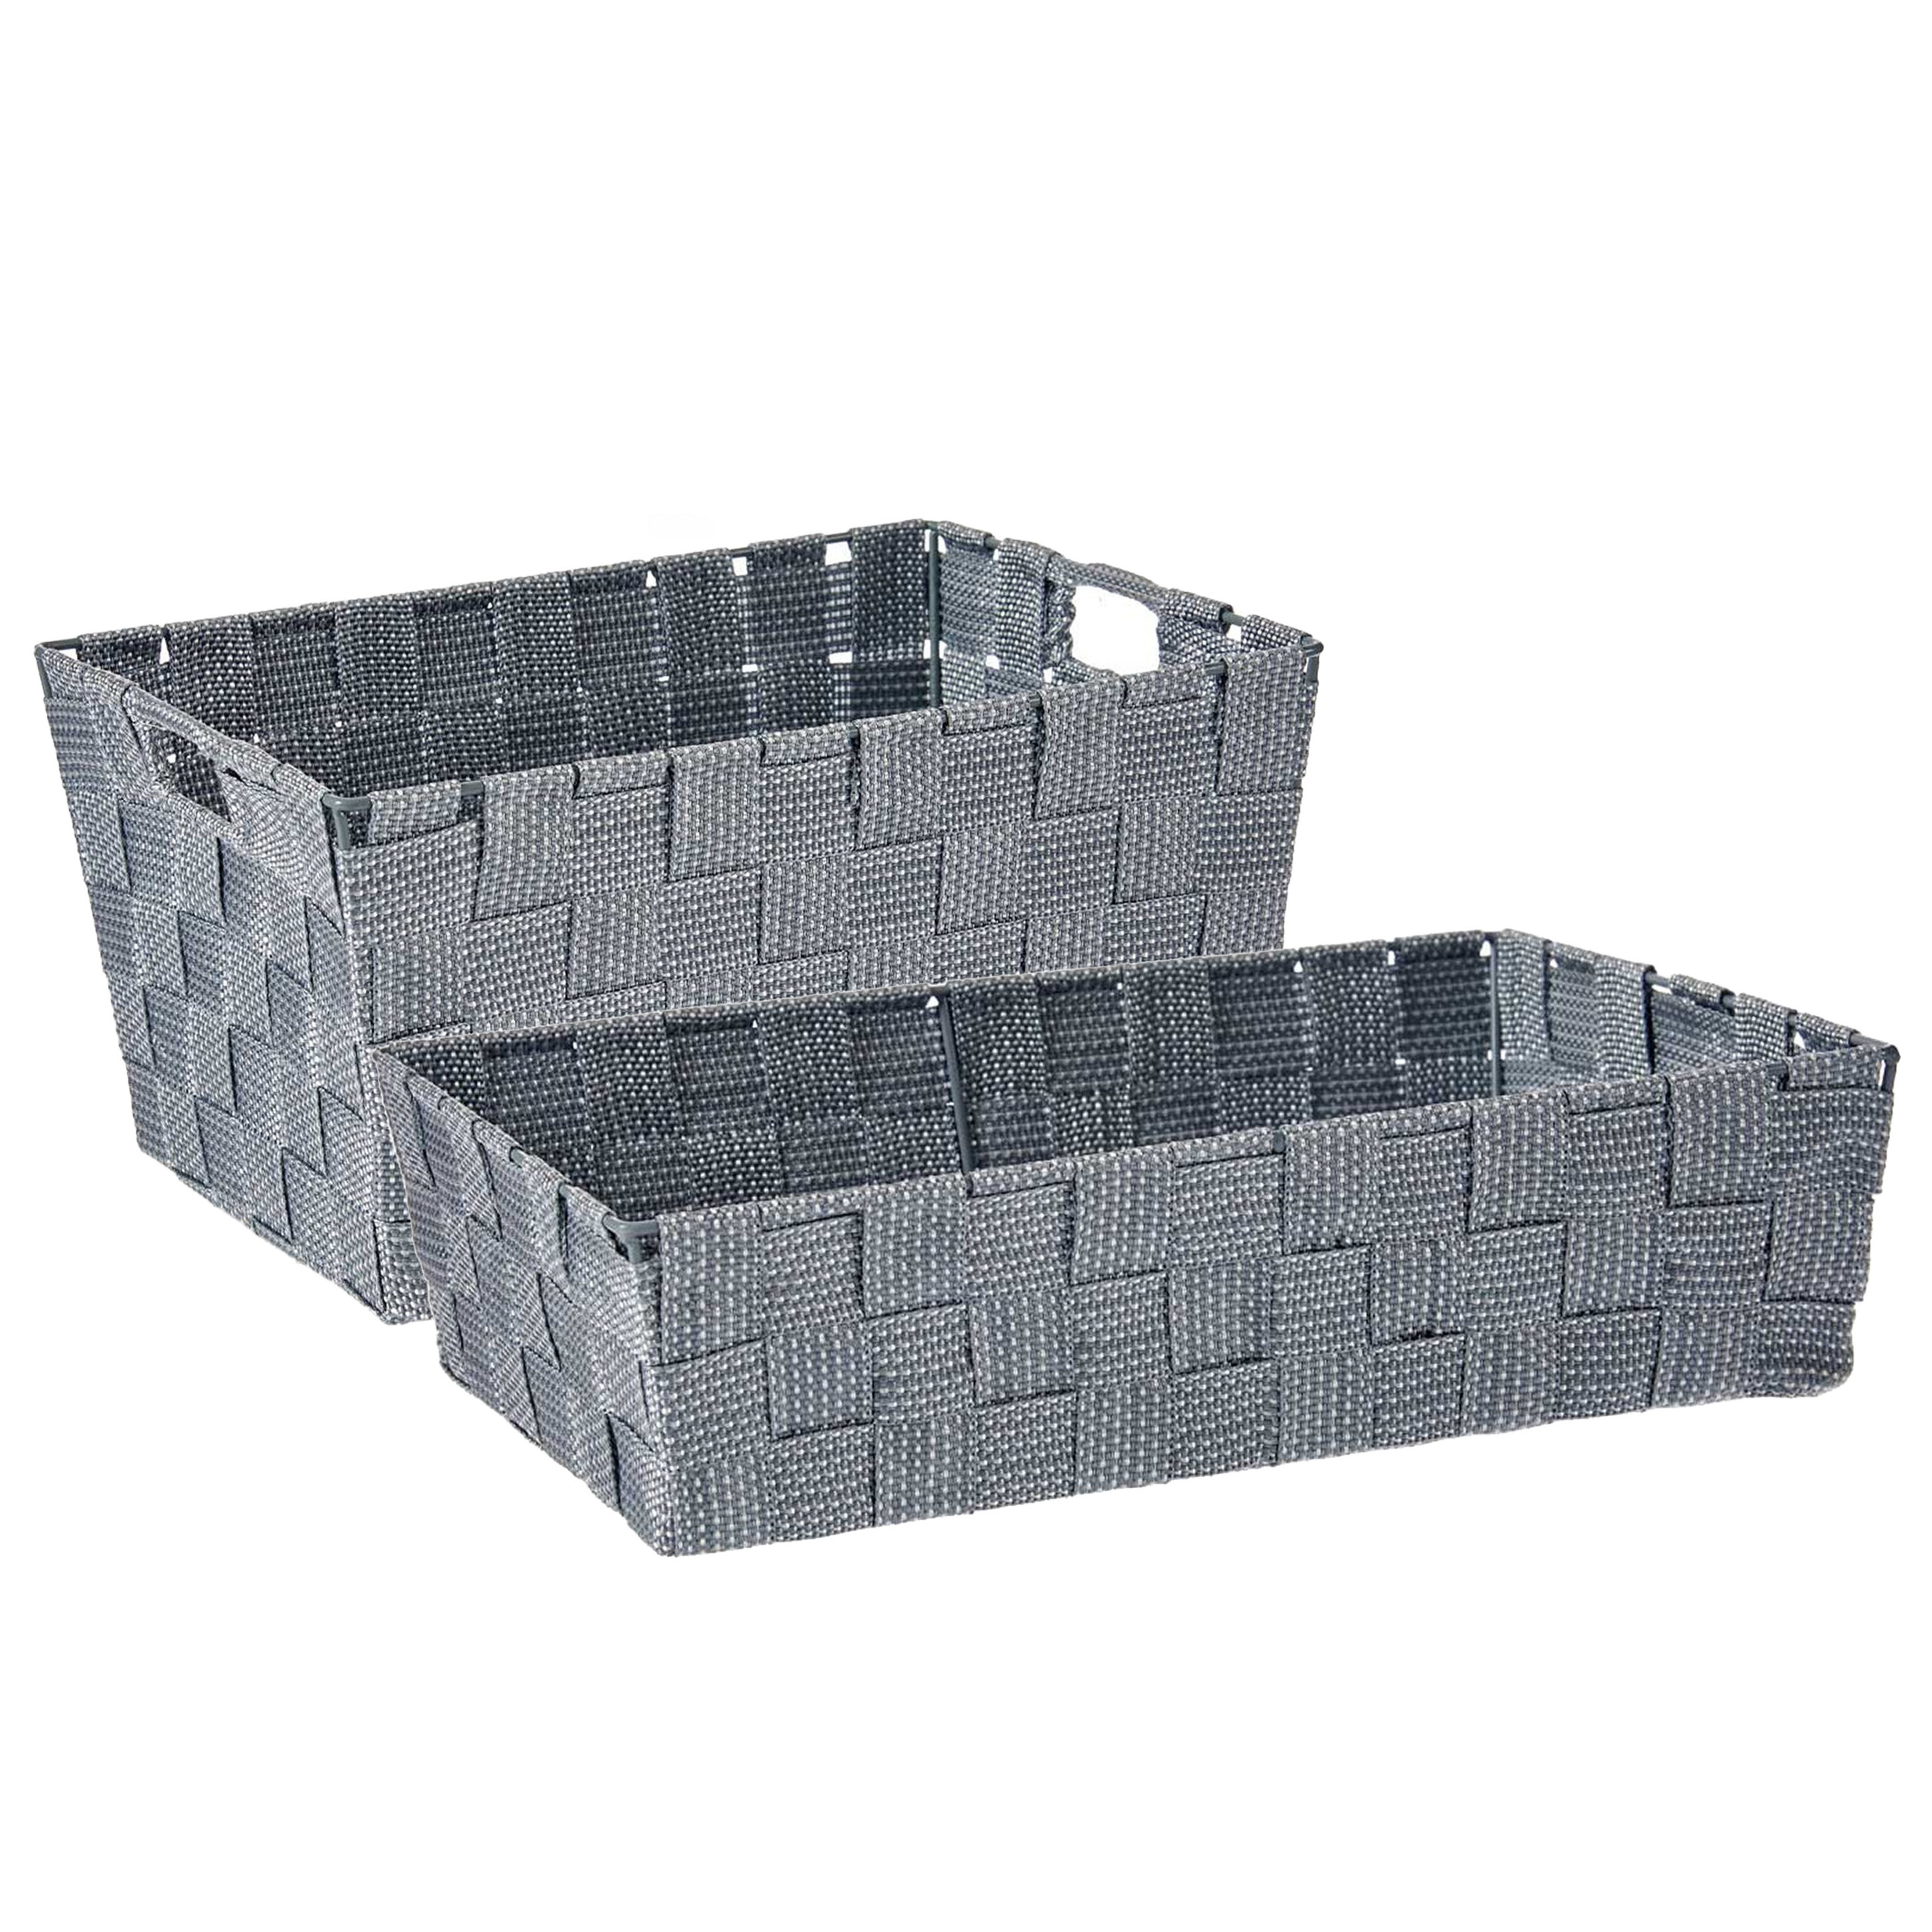 Kast-badkamer opbergmandjes set van 5x stuks zilvergrijs in 2 formaten